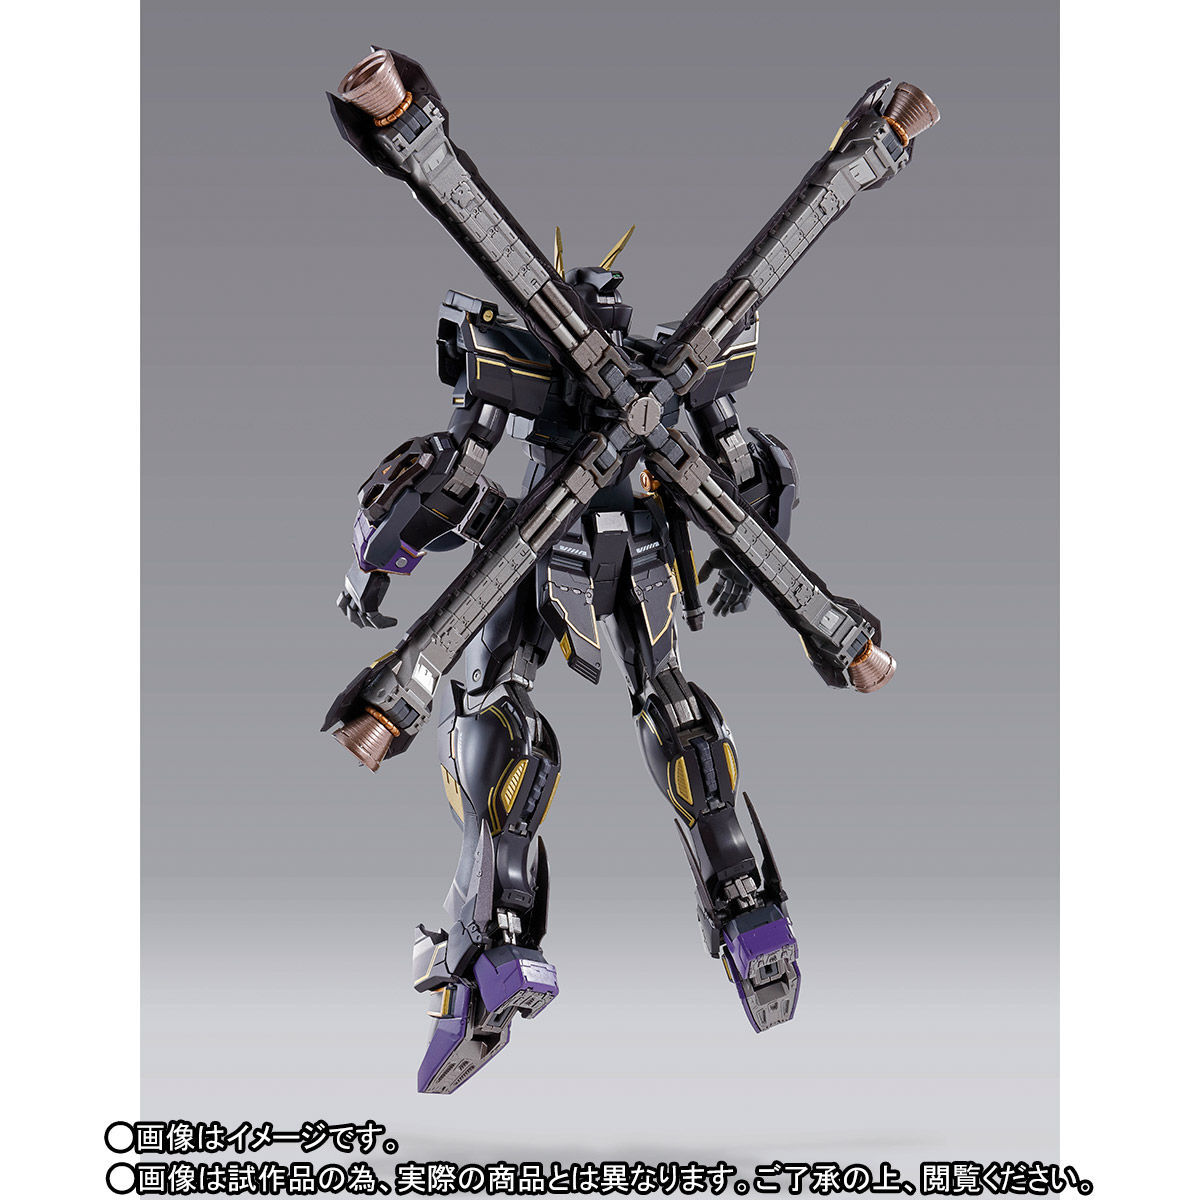 【新品未開封】バンダイスピリッツ BANDAI SPIRITS METAL BUILD 機動戦士ガンダム クロスボーンガンダム X2_画像2